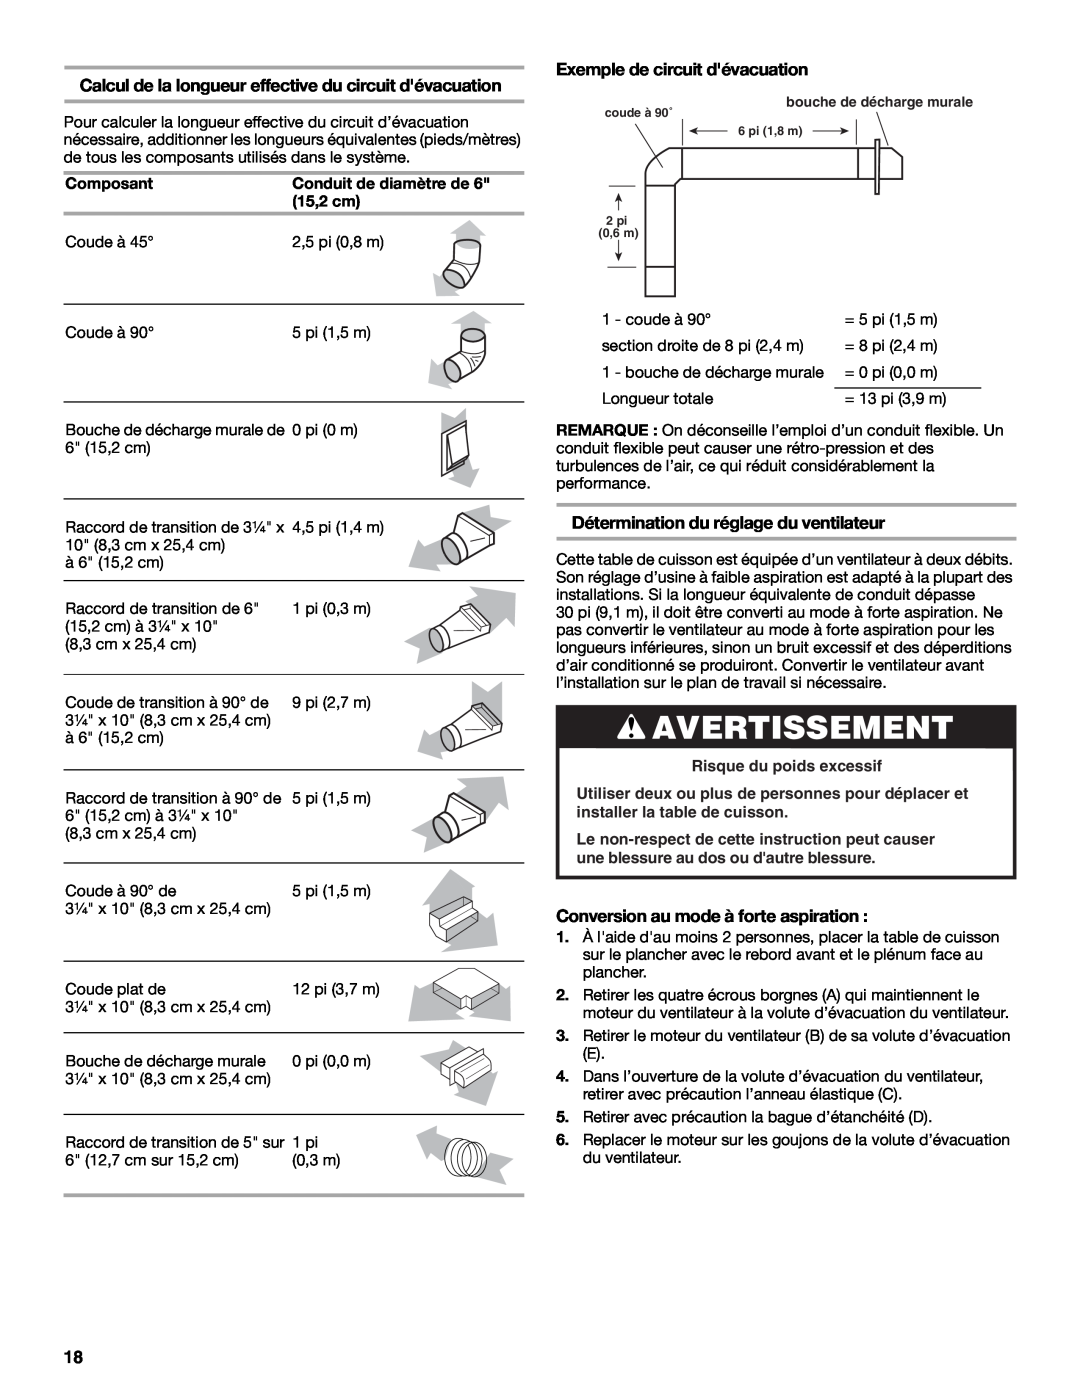 Jenn-Air W10298937B Avertissement, Exemple de circuit dévacuation, Détermination du réglage du ventilateur 